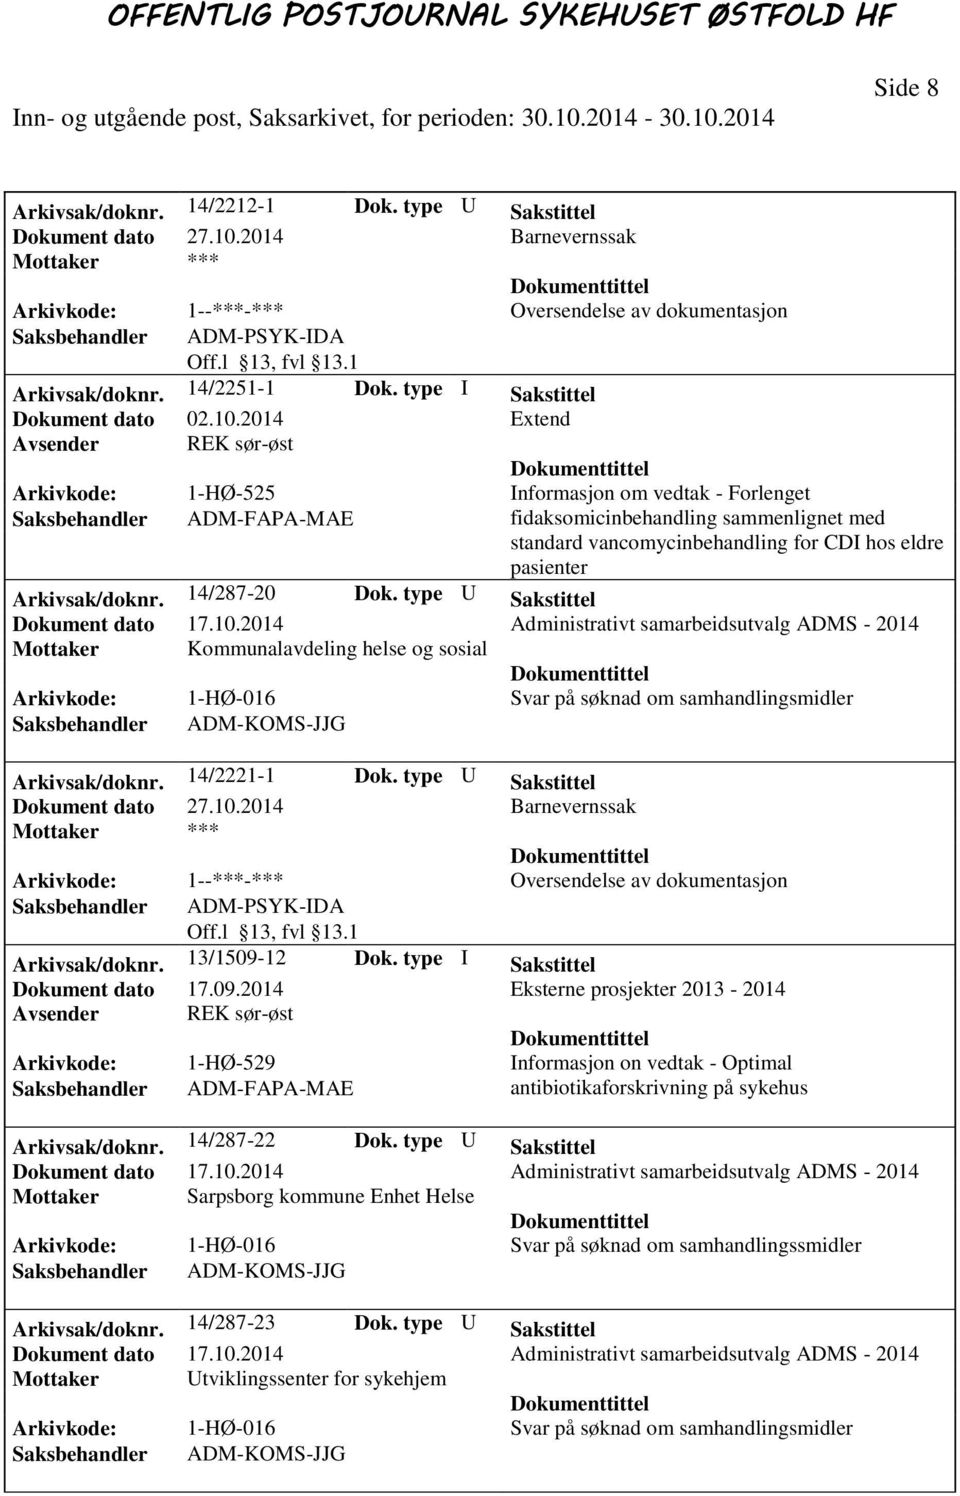 2014 Extend Avsender REK sør-øst Arkivkode: 1-HØ-525 Informasjon om vedtak - Forlenget fidaksomicinbehandling sammenlignet med standard vancomycinbehandling for CDI hos eldre pasienter Arkivsak/doknr.